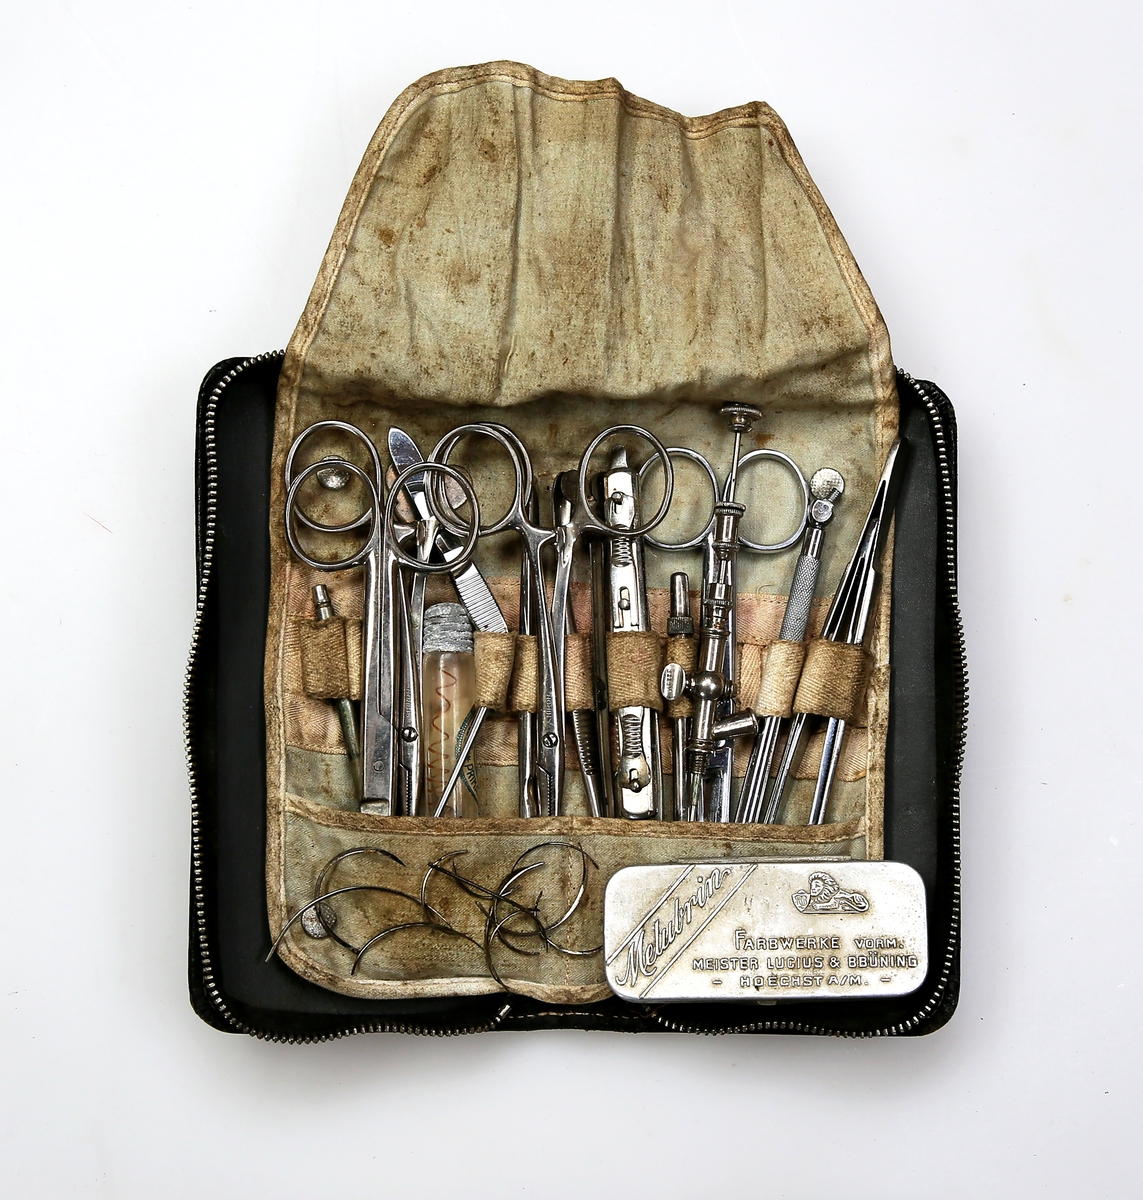 Skinnetui med diverse instrumenter for mindre kirurgiske inngrep og skadebehandling, herunder sakser, kniver, pinsetter, suturnåler, suturtråd, nåleholder, injeksjonsnåler